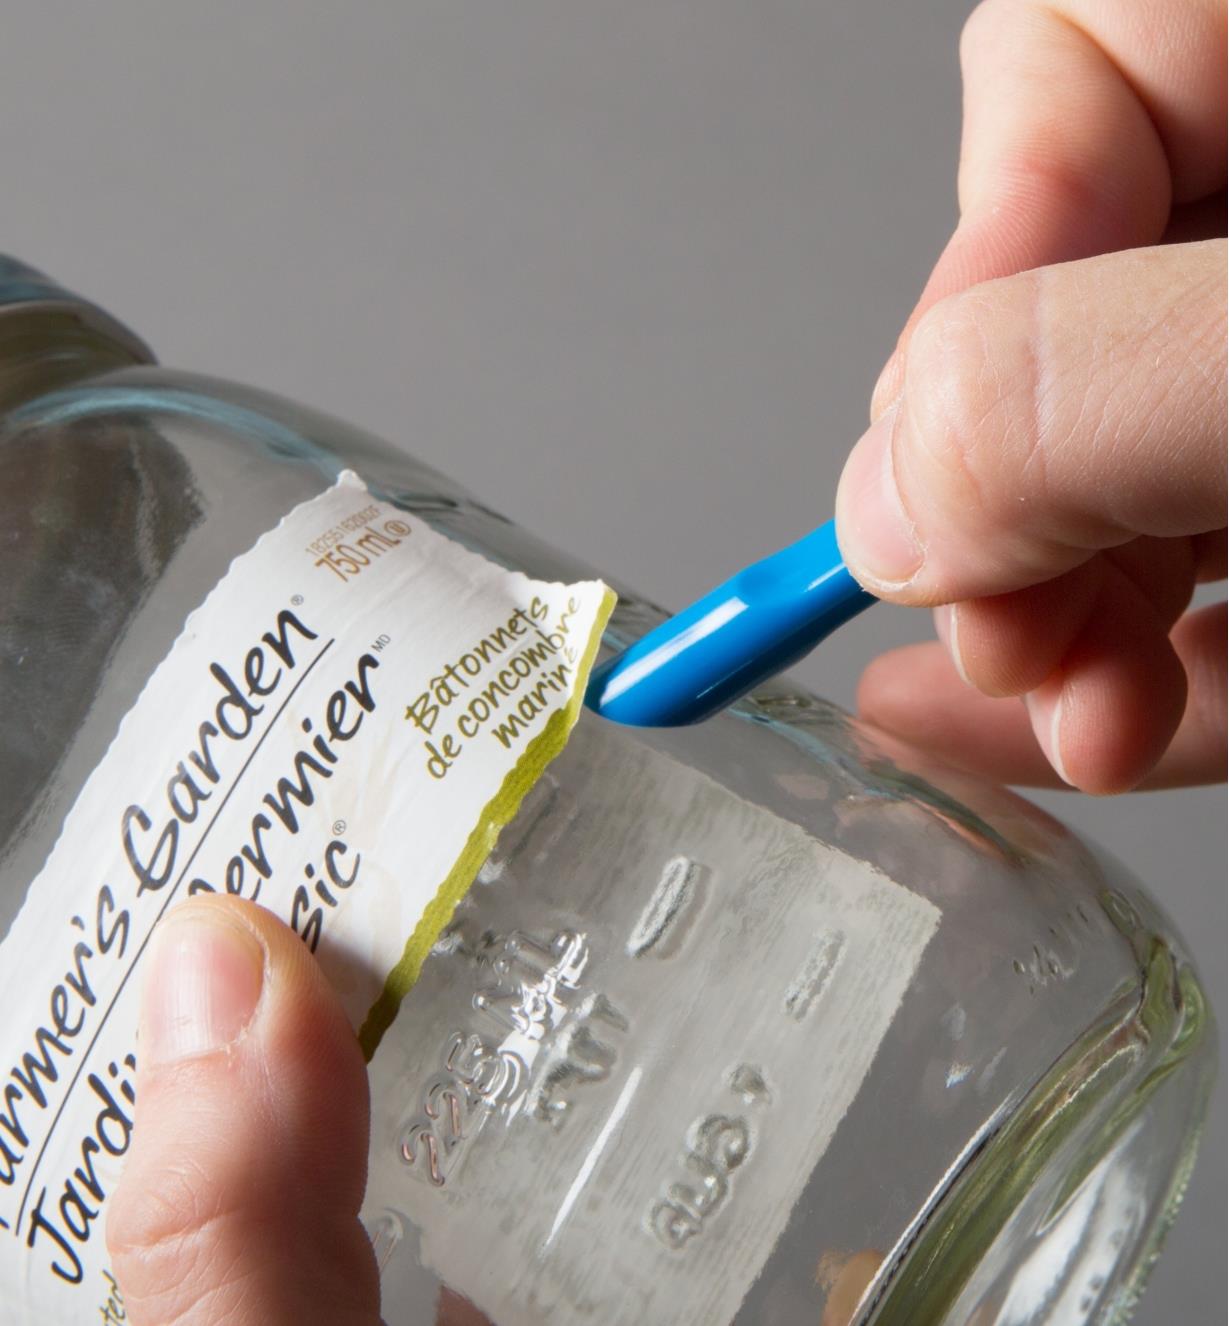 Using a Scrigit Scraper to remove a label from a jar